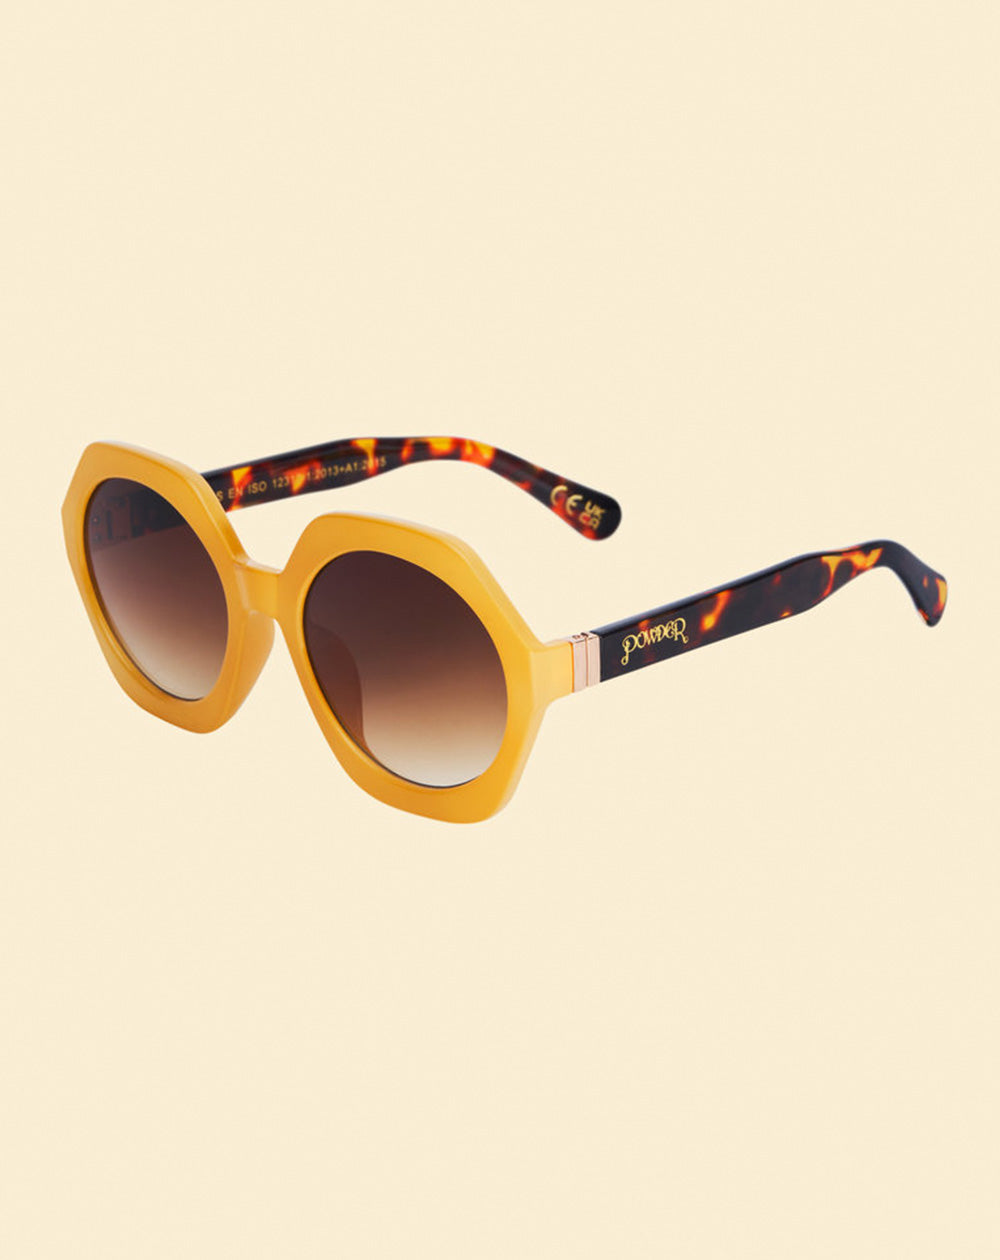 Powder GEO1 - Luxe Georgie Sunglasses in Custard/Tortoiseshell